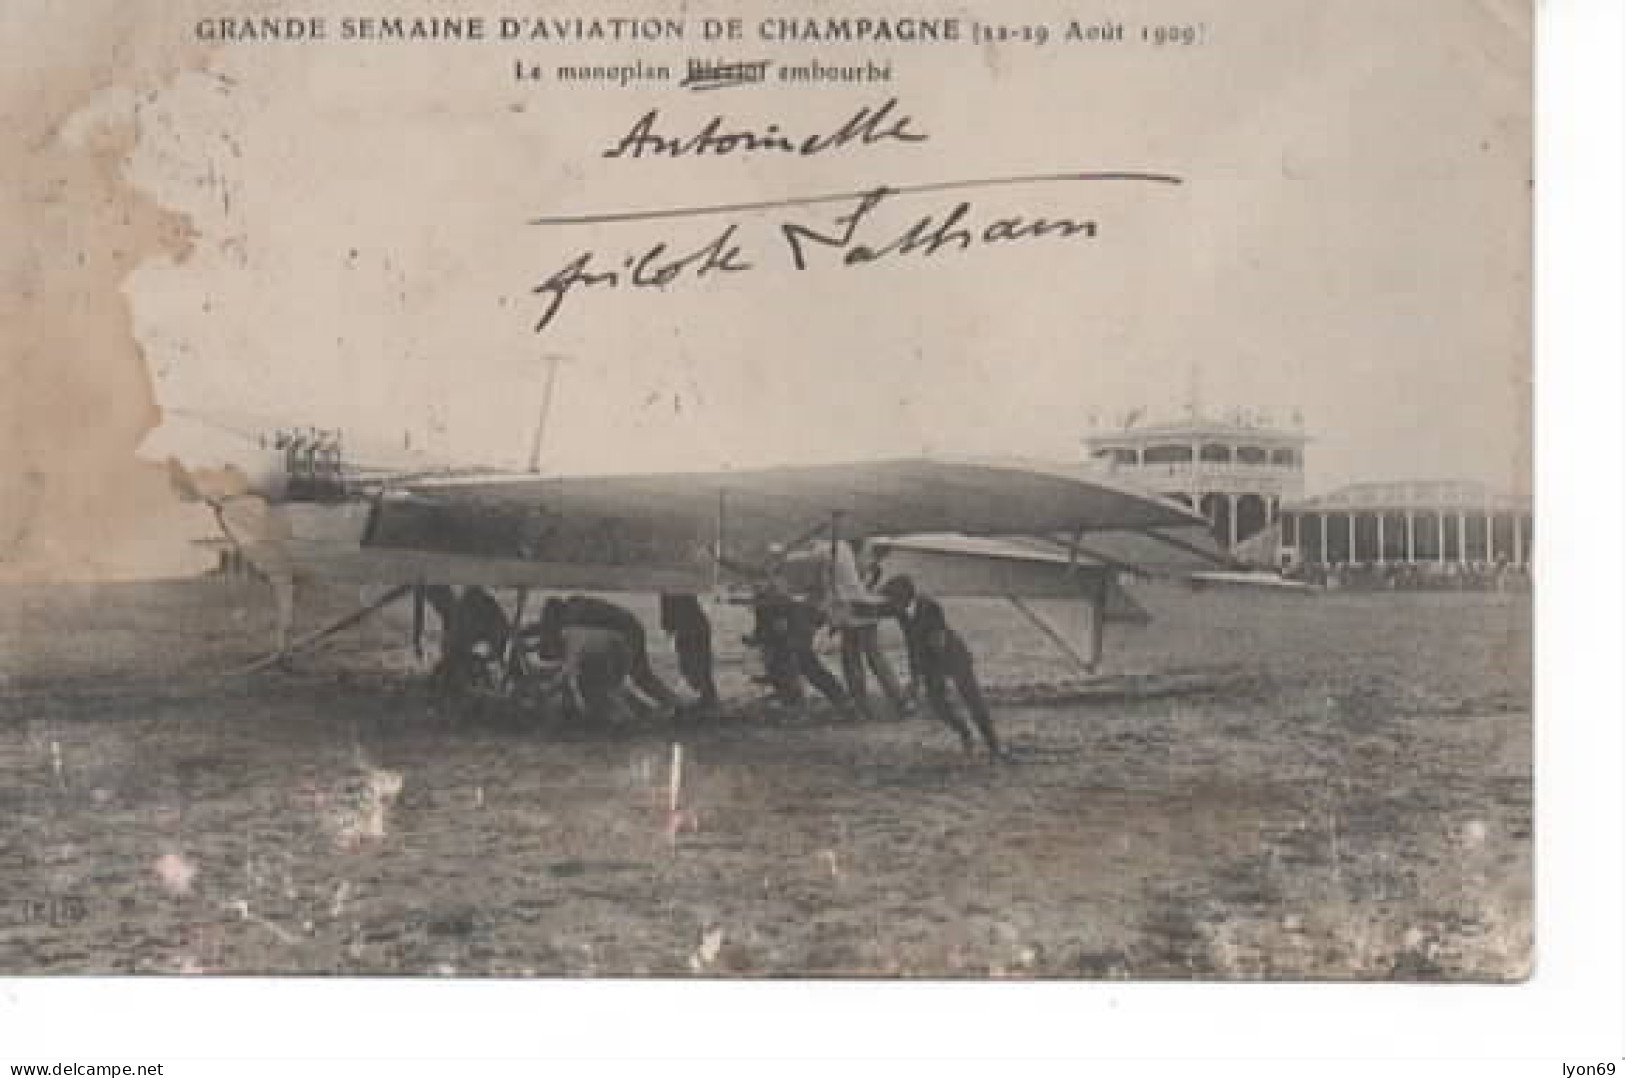 GRANDE SEMAINE D AVIATION DE CHAMPAGNE 22/9  AOUT 1909  LE MONOPLAN ANTOINETTE EMBOURBE   MAUVAIS CACHET  BETENY AVIATIO - Meetings